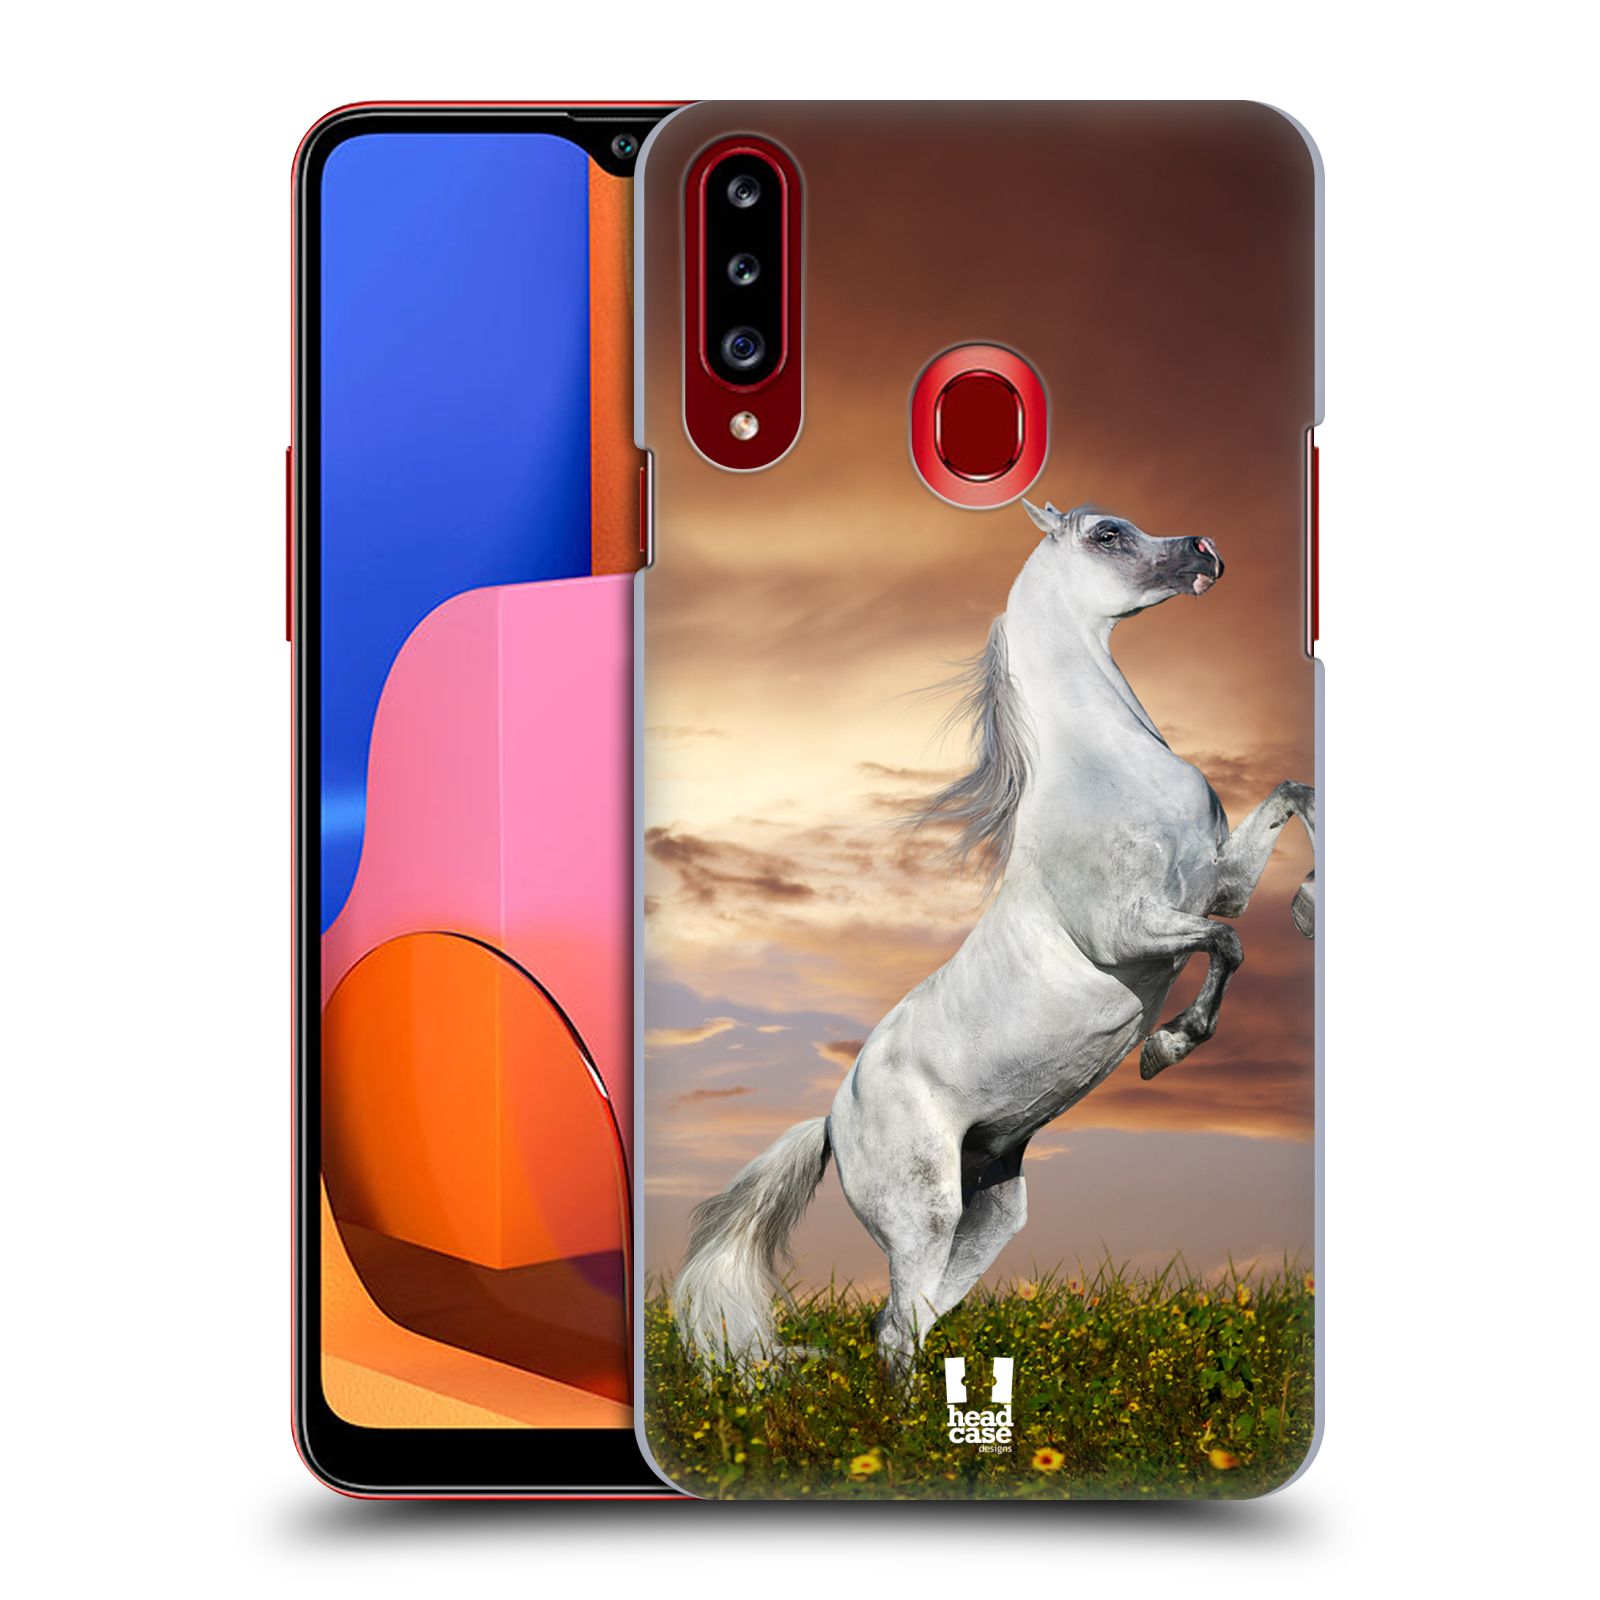 Zadní obal pro mobil Samsung Galaxy A20s - HEAD CASE - Svět zvířat divoký kůň